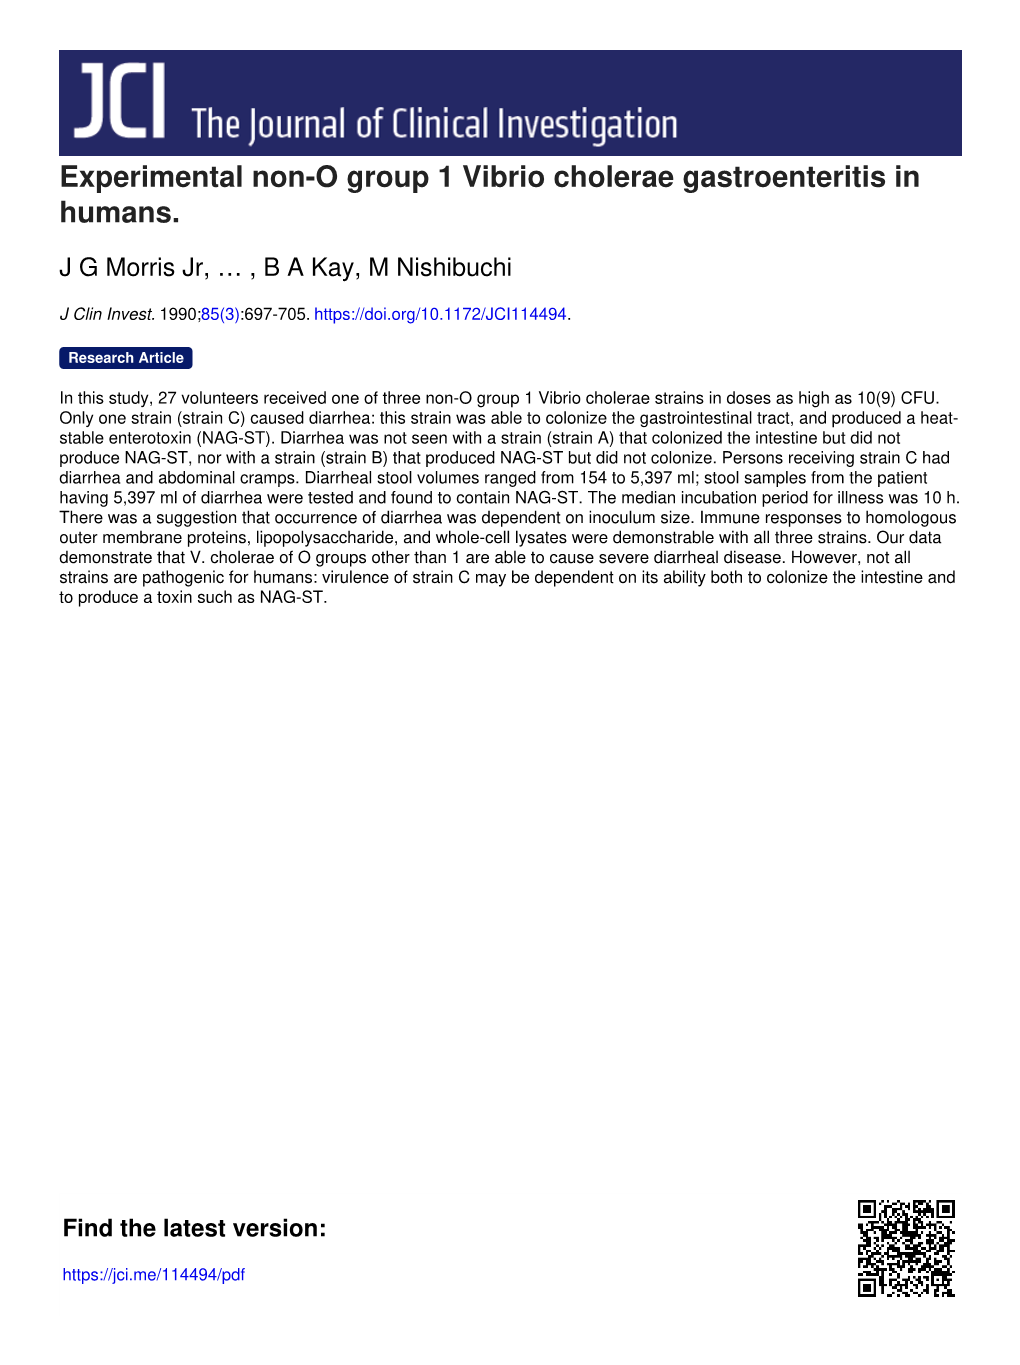 Experimental Non-O Group 1 Vibrio Cholerae Gastroenteritis in Humans